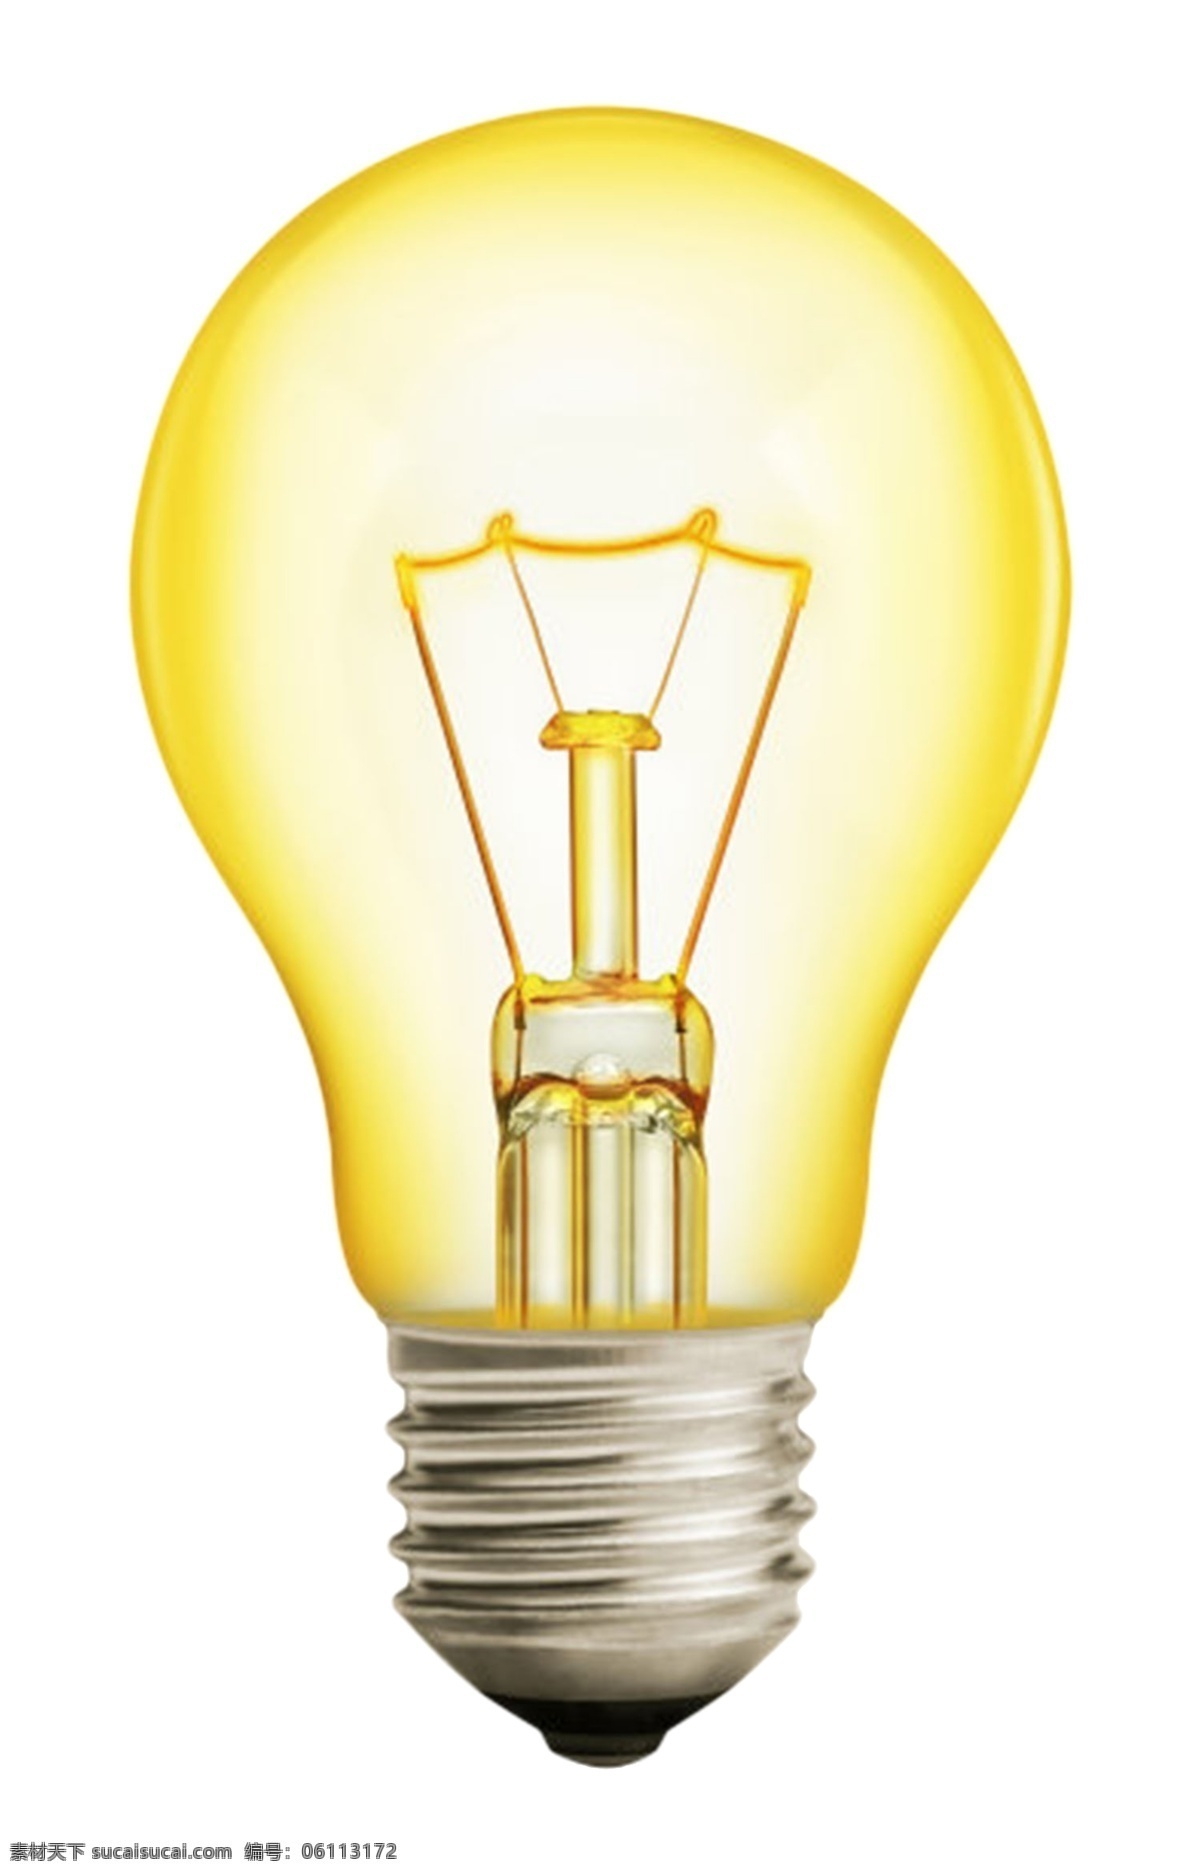 黄色灯泡 灯 电灯 电灯泡 素材图